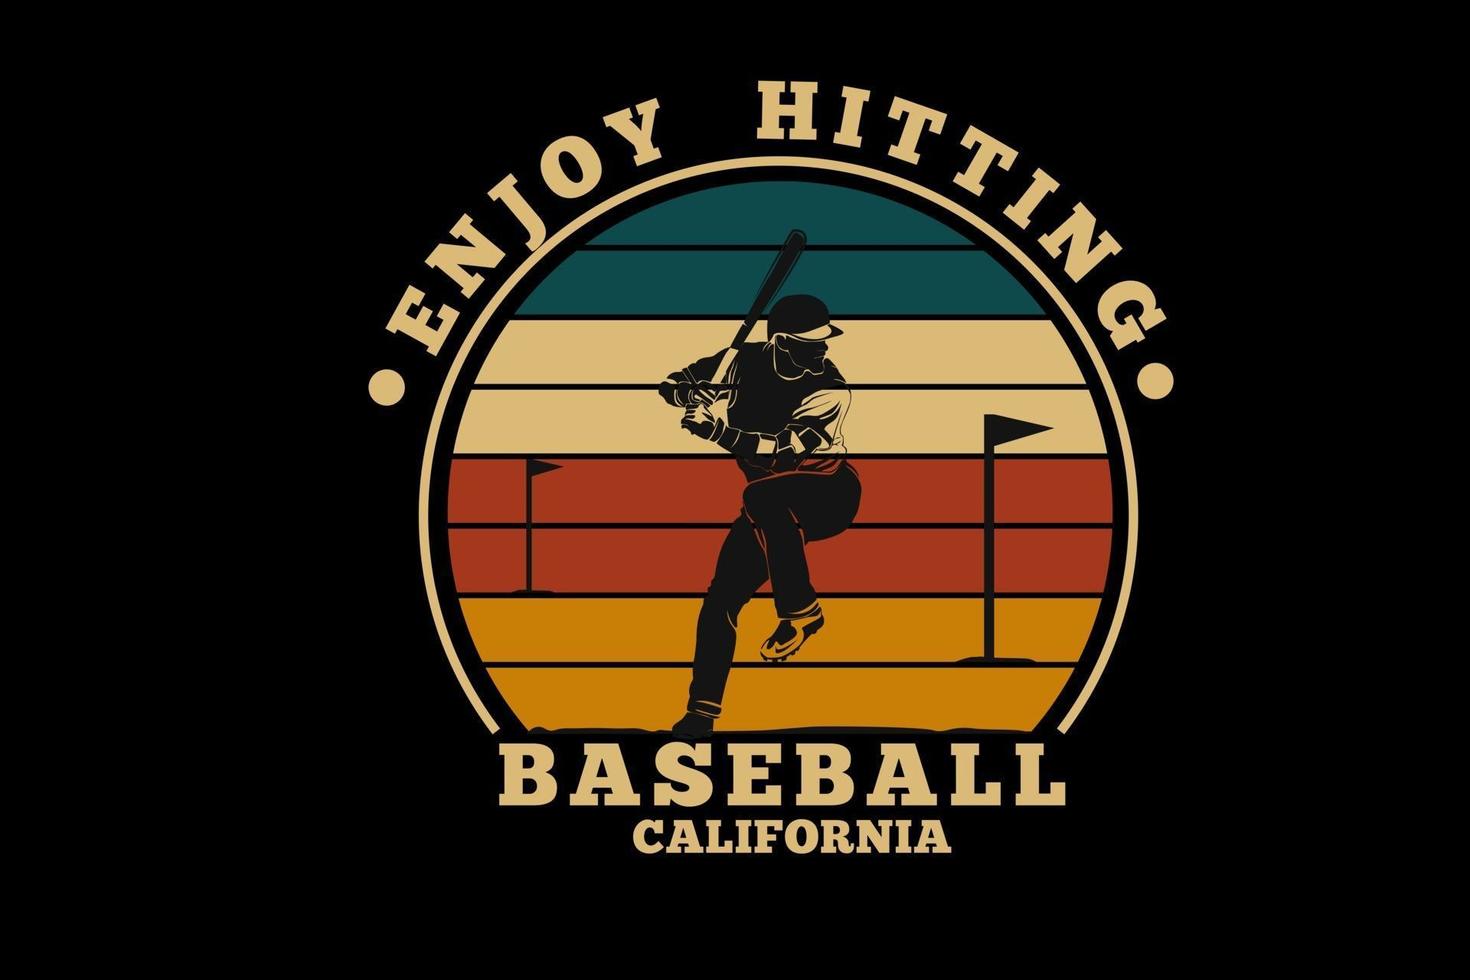 baseball california silhouette design vector